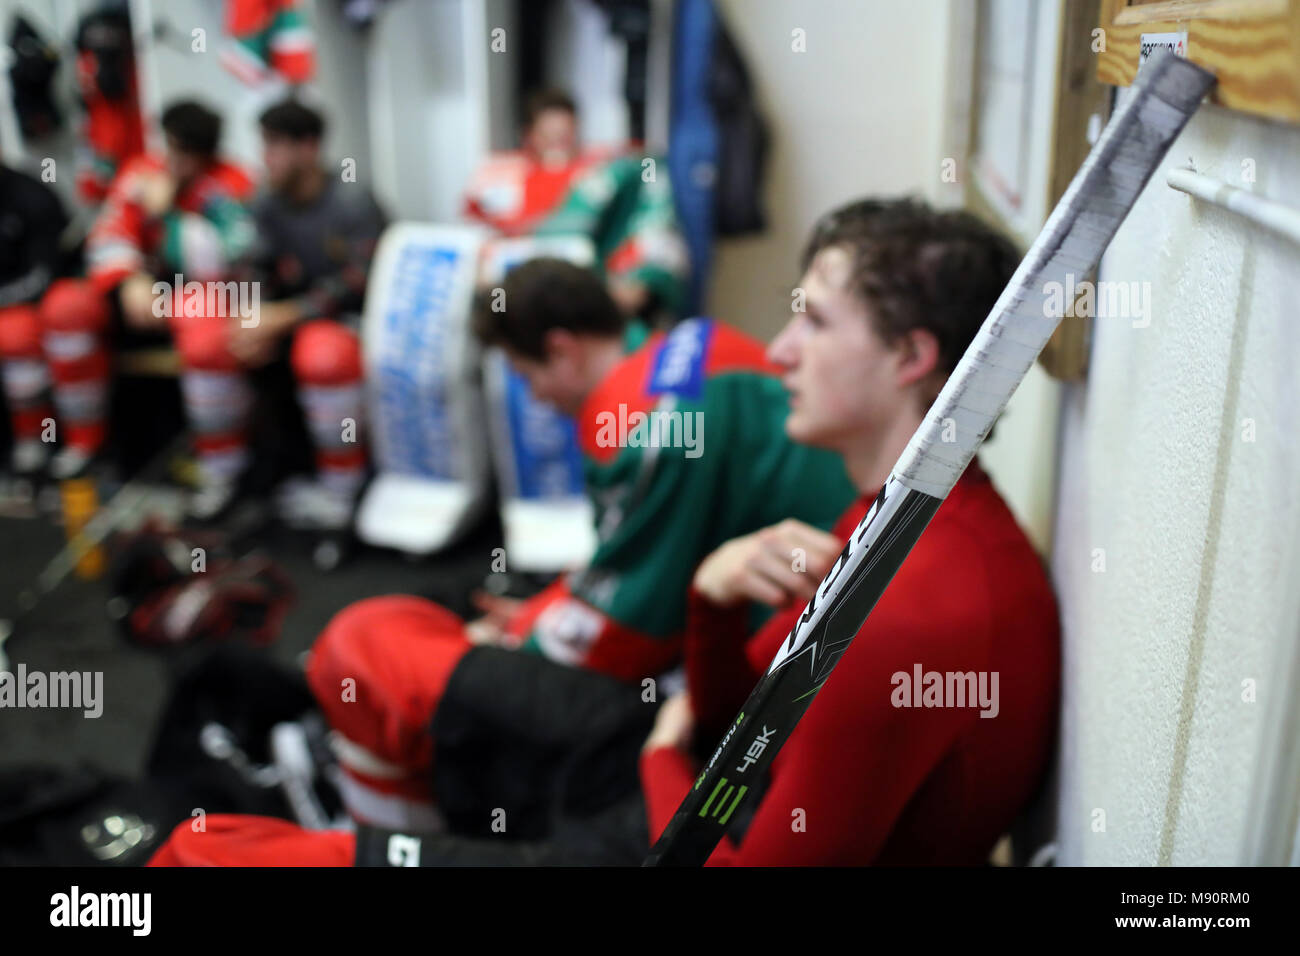 Ice Hockey. Locker room. Stock Photo